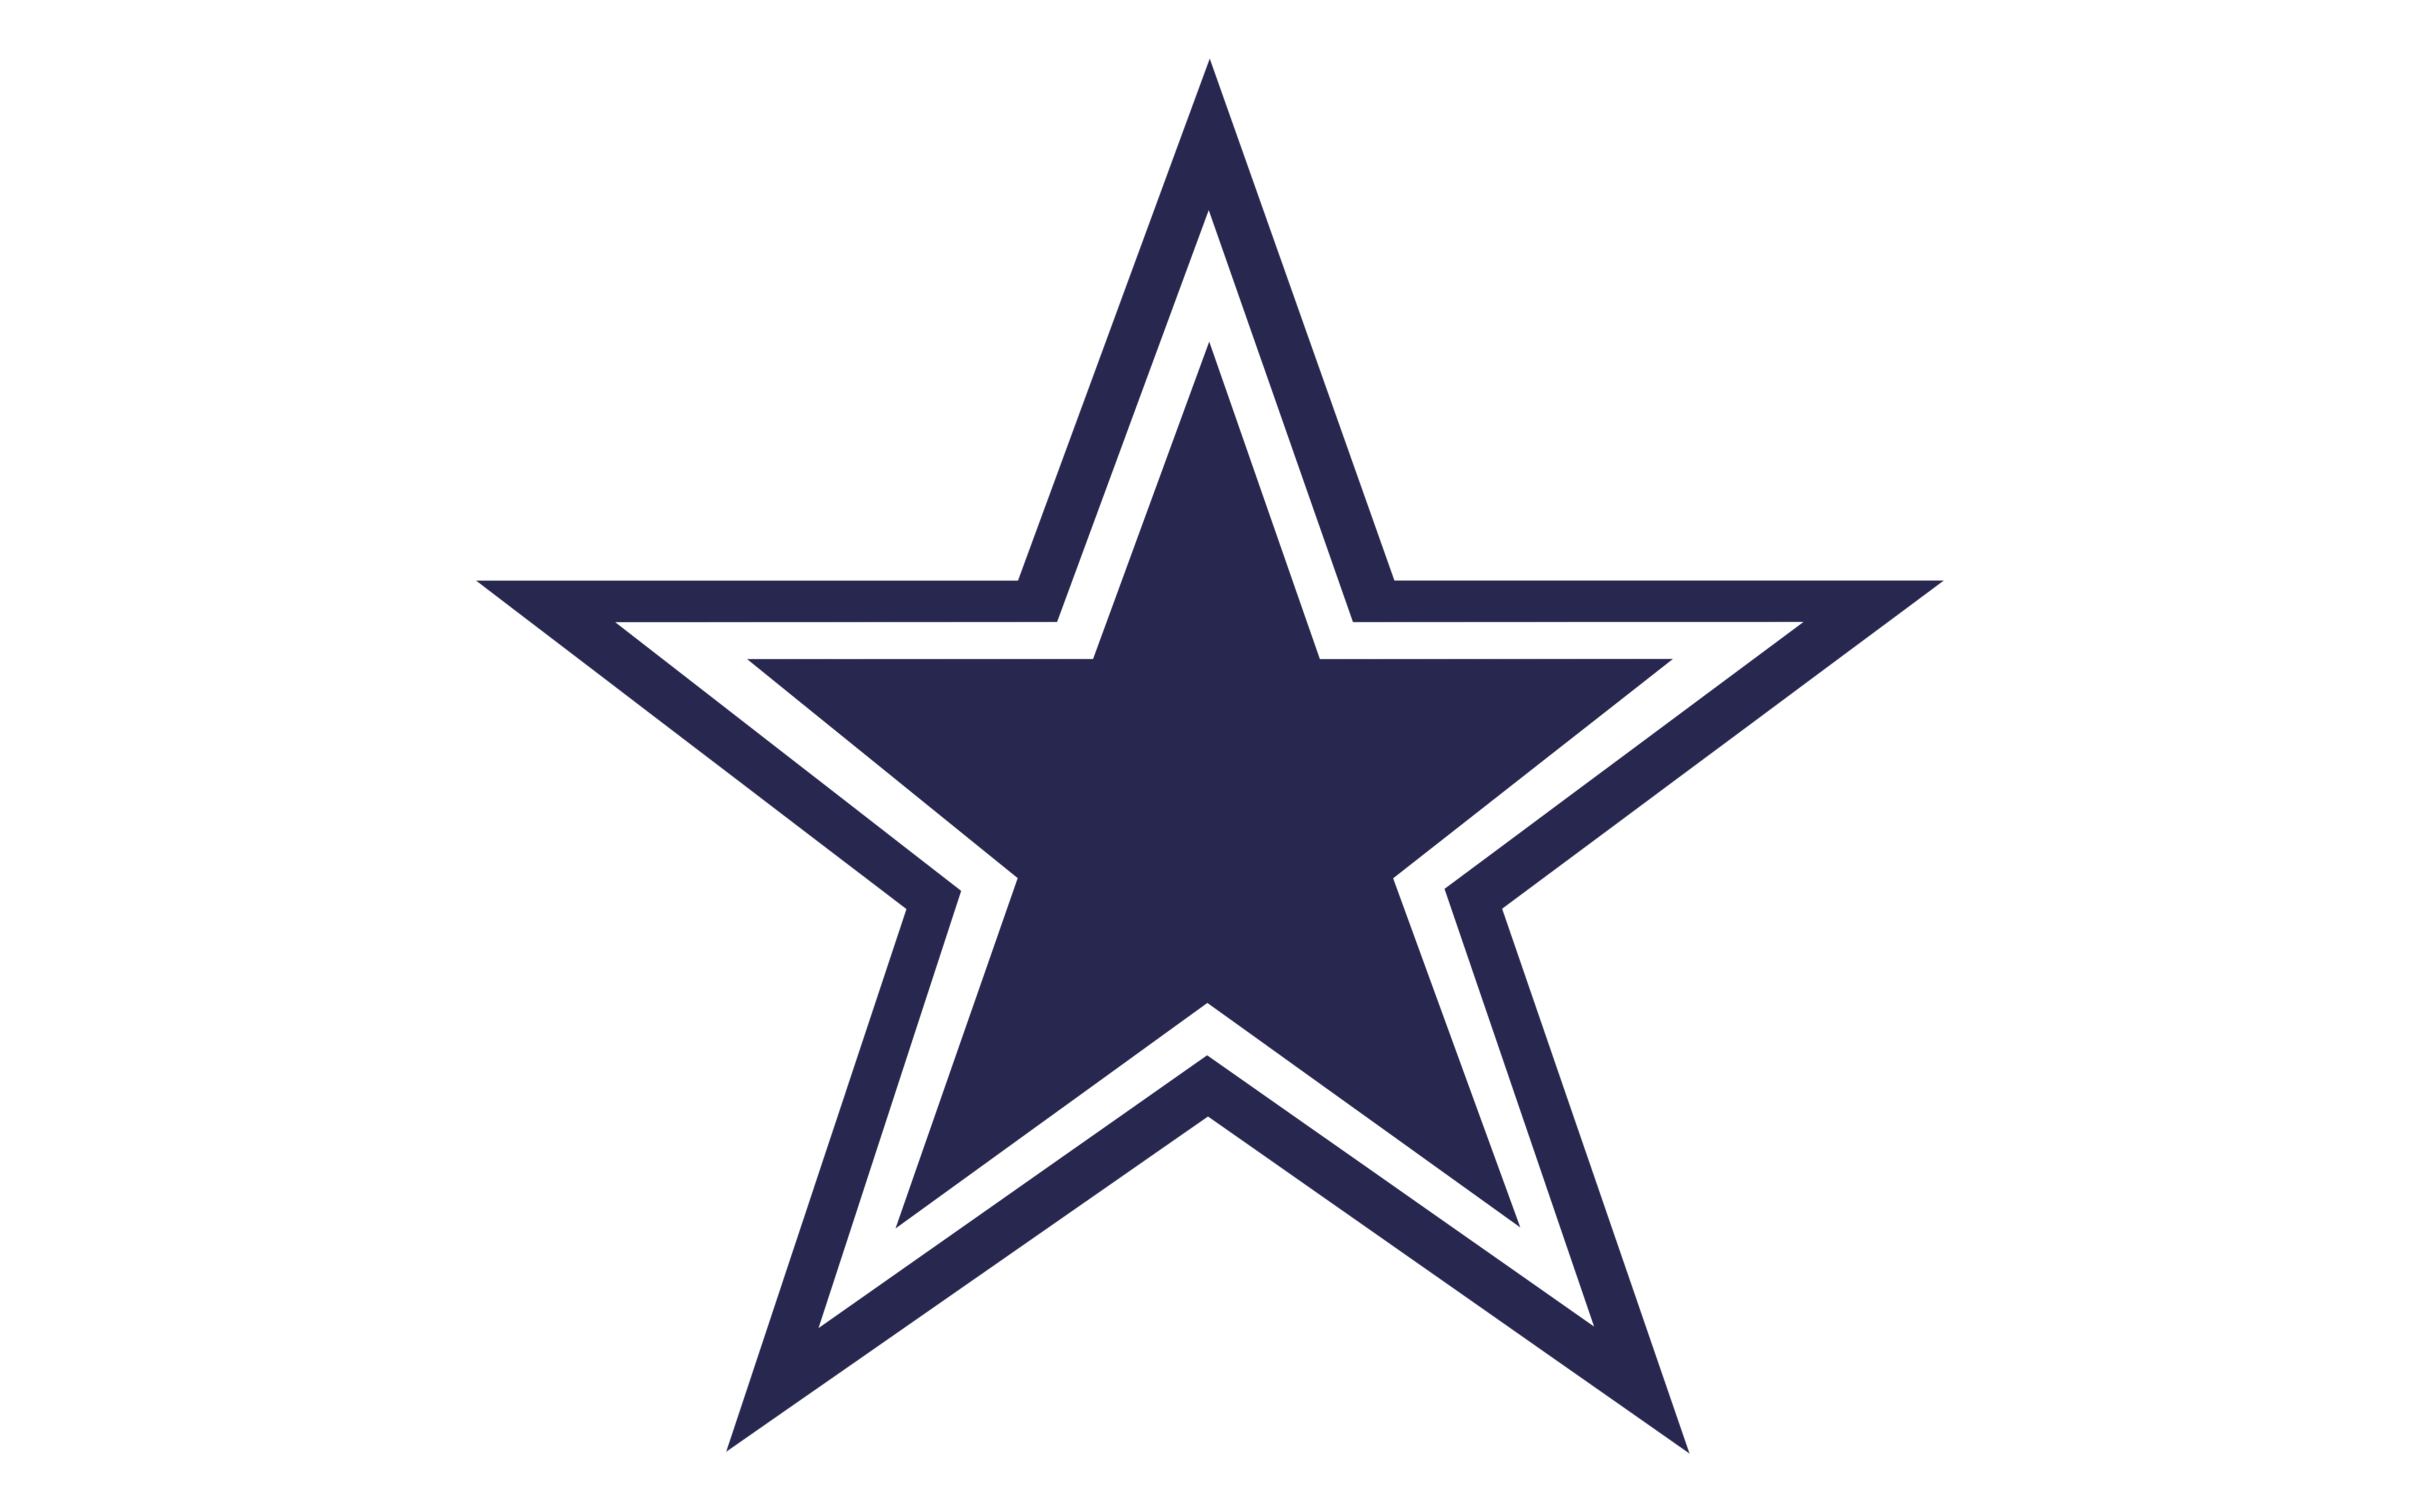 Dallas Cowboys Star PNG Photo